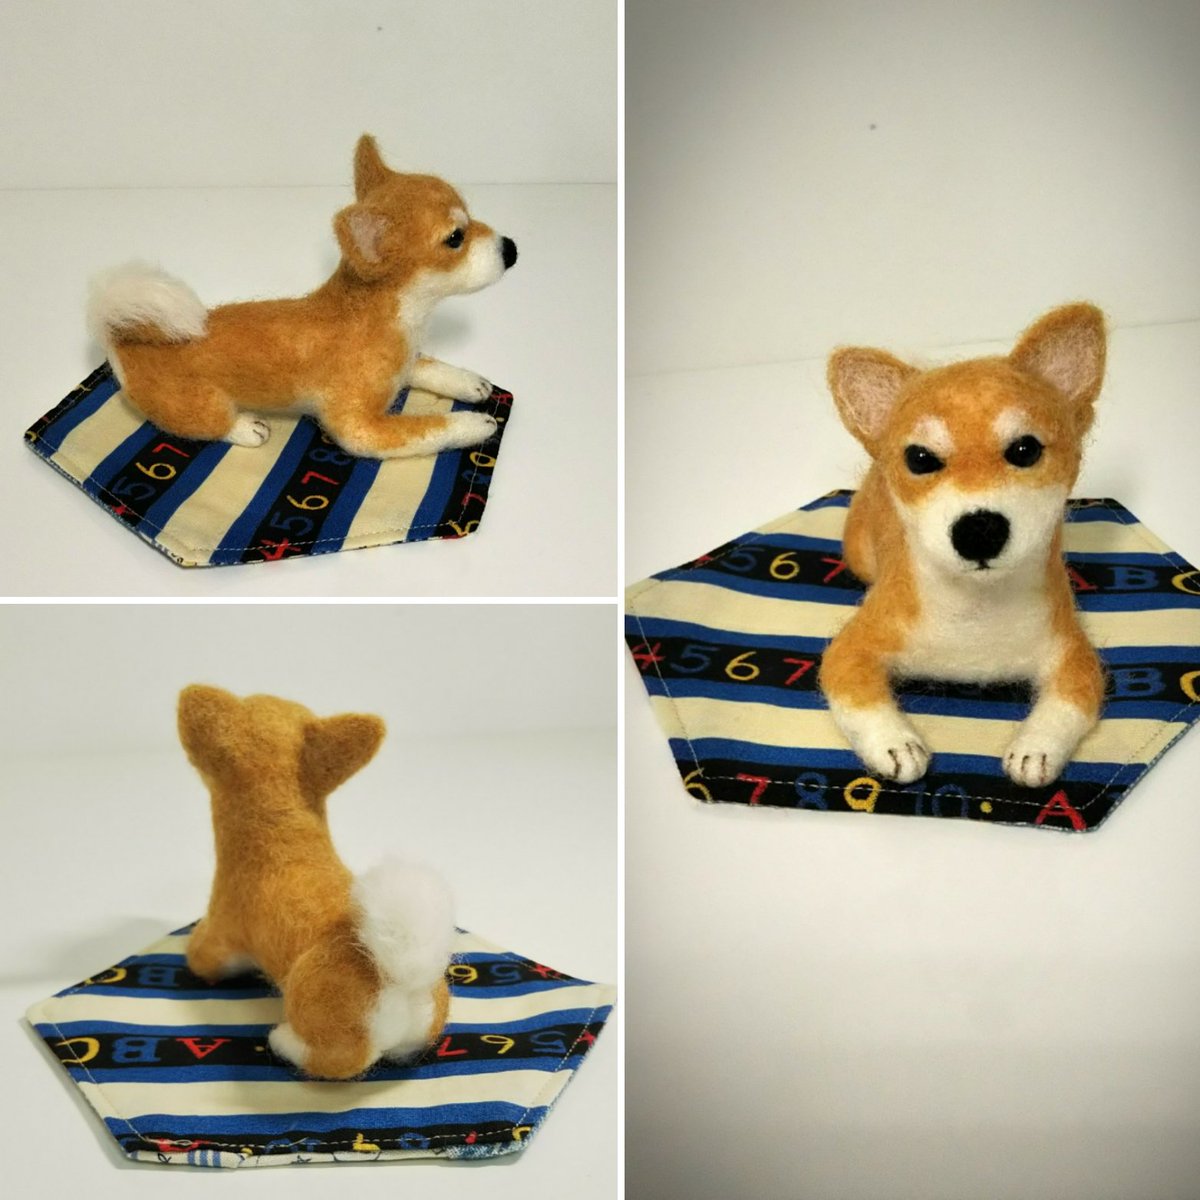 Twoucan 日本の犬 の注目ツイート イラスト マンガ コスプレ モデル